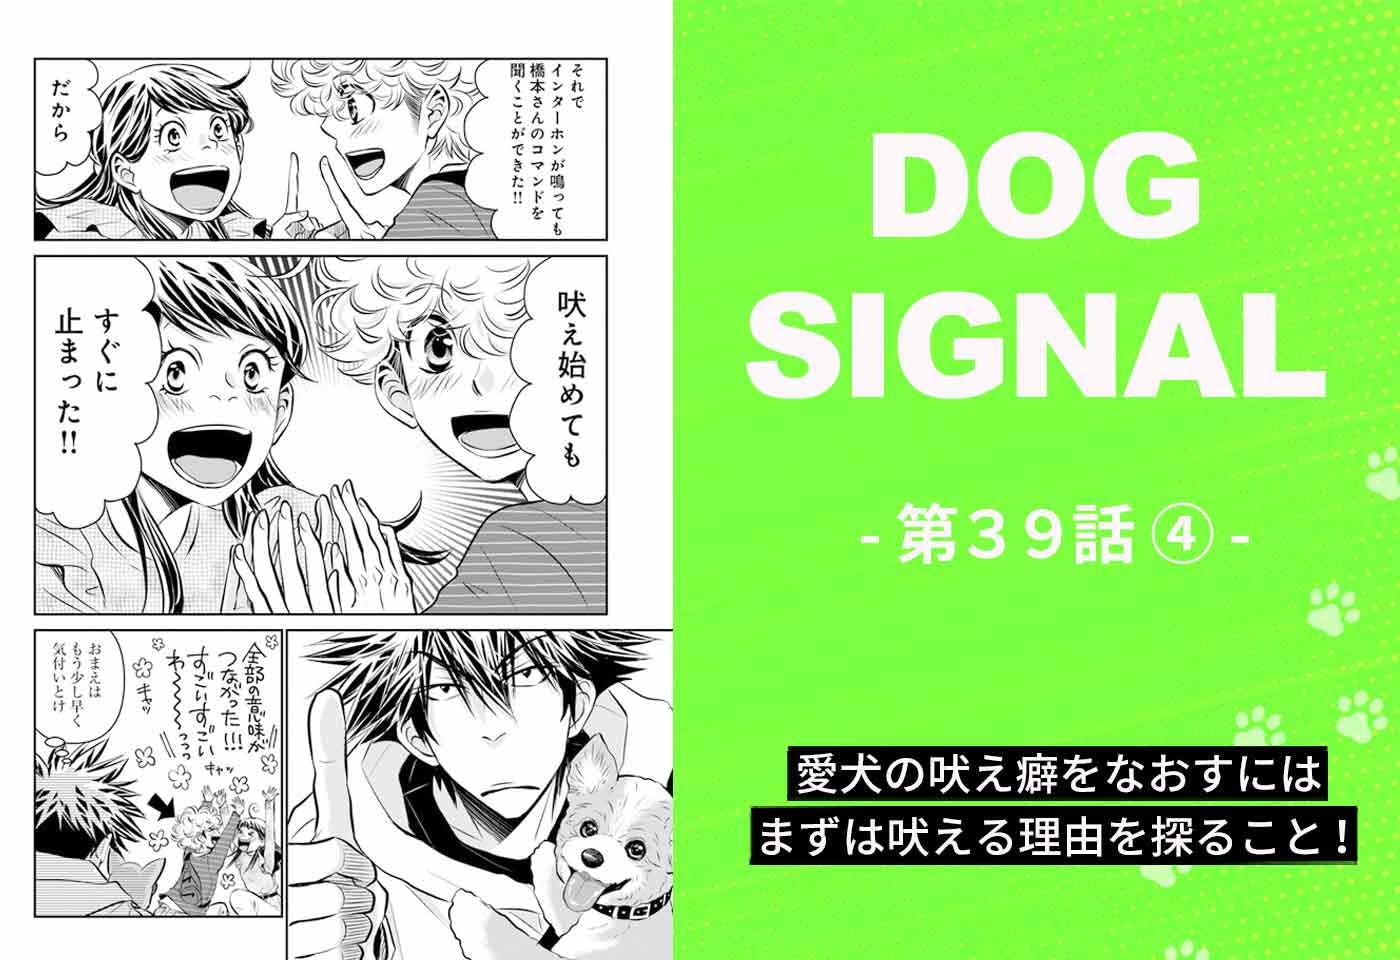 『DOG SIGNAL（ドッグシグナル）』39話目4/4　犬の吠えを止めるトレーニングとは